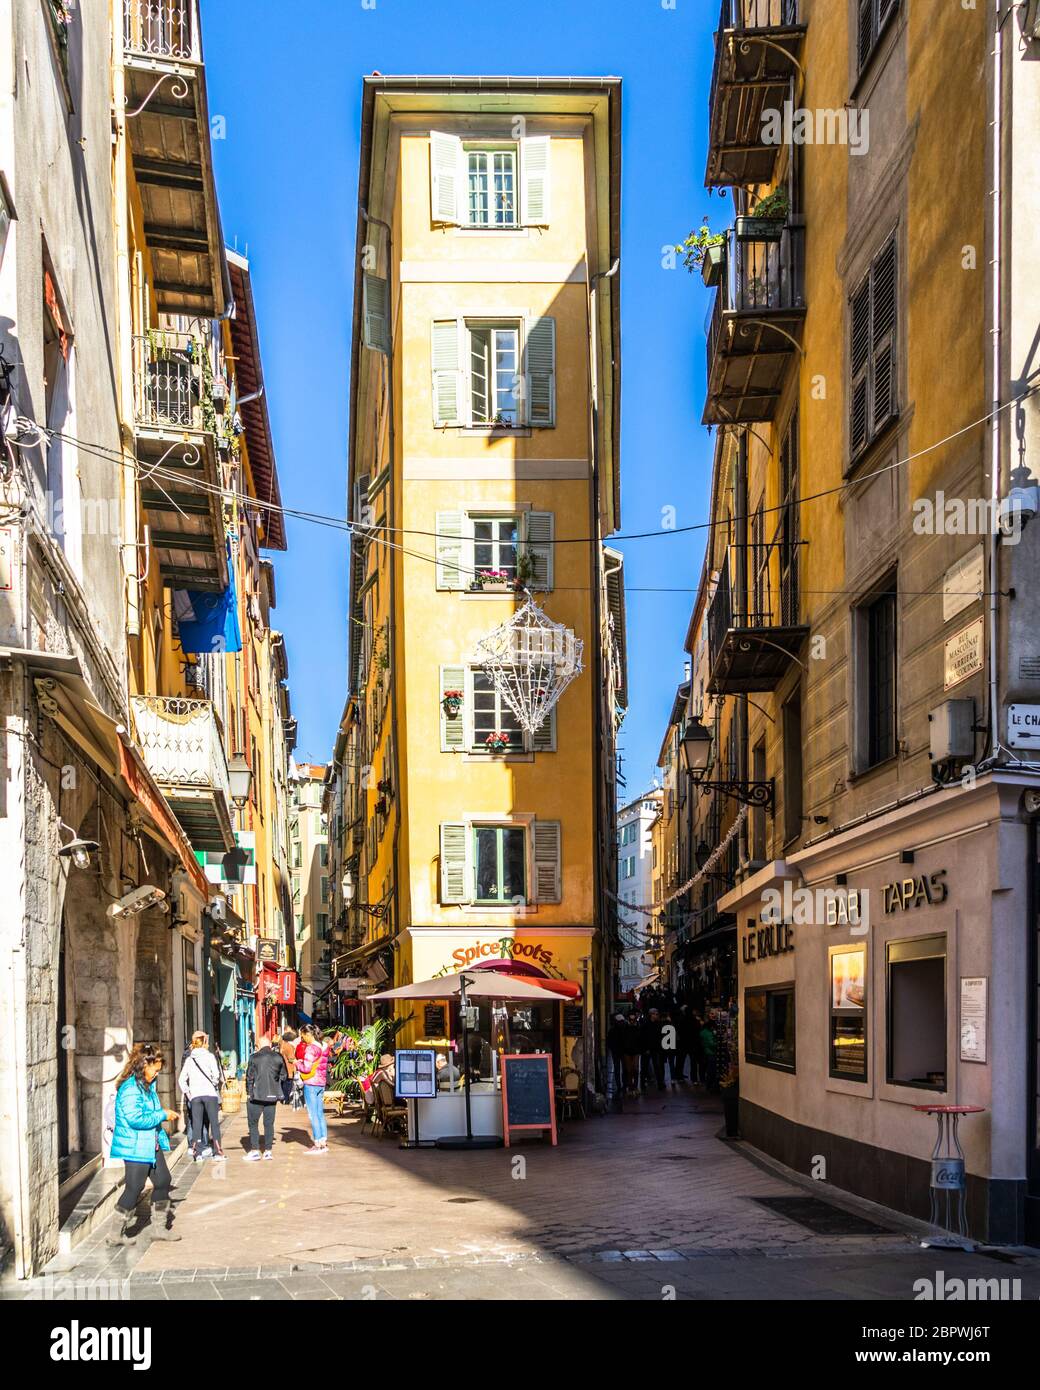 Bâtiments typiques et ruelles étroites de la vieille ville de Nice. Nice, France, janvier 2020 Banque D'Images